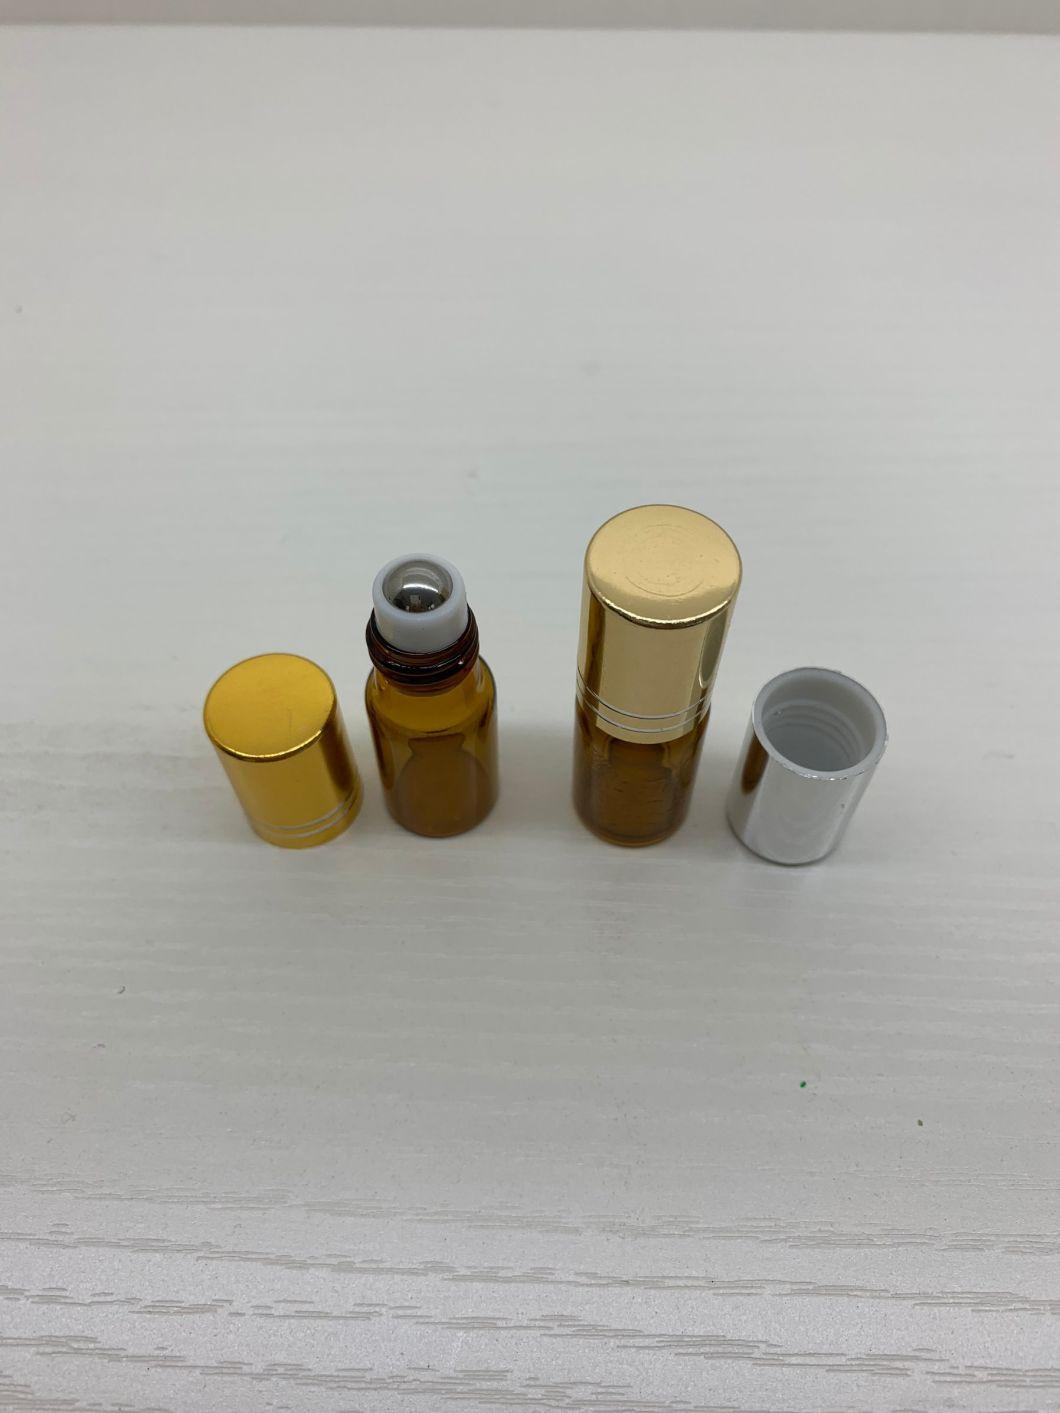 3ml Amber Deodorant Roll on Roller Glass Bottle for Essential Oils Refillable Perfume Bottle Tubular Roll on Bottle